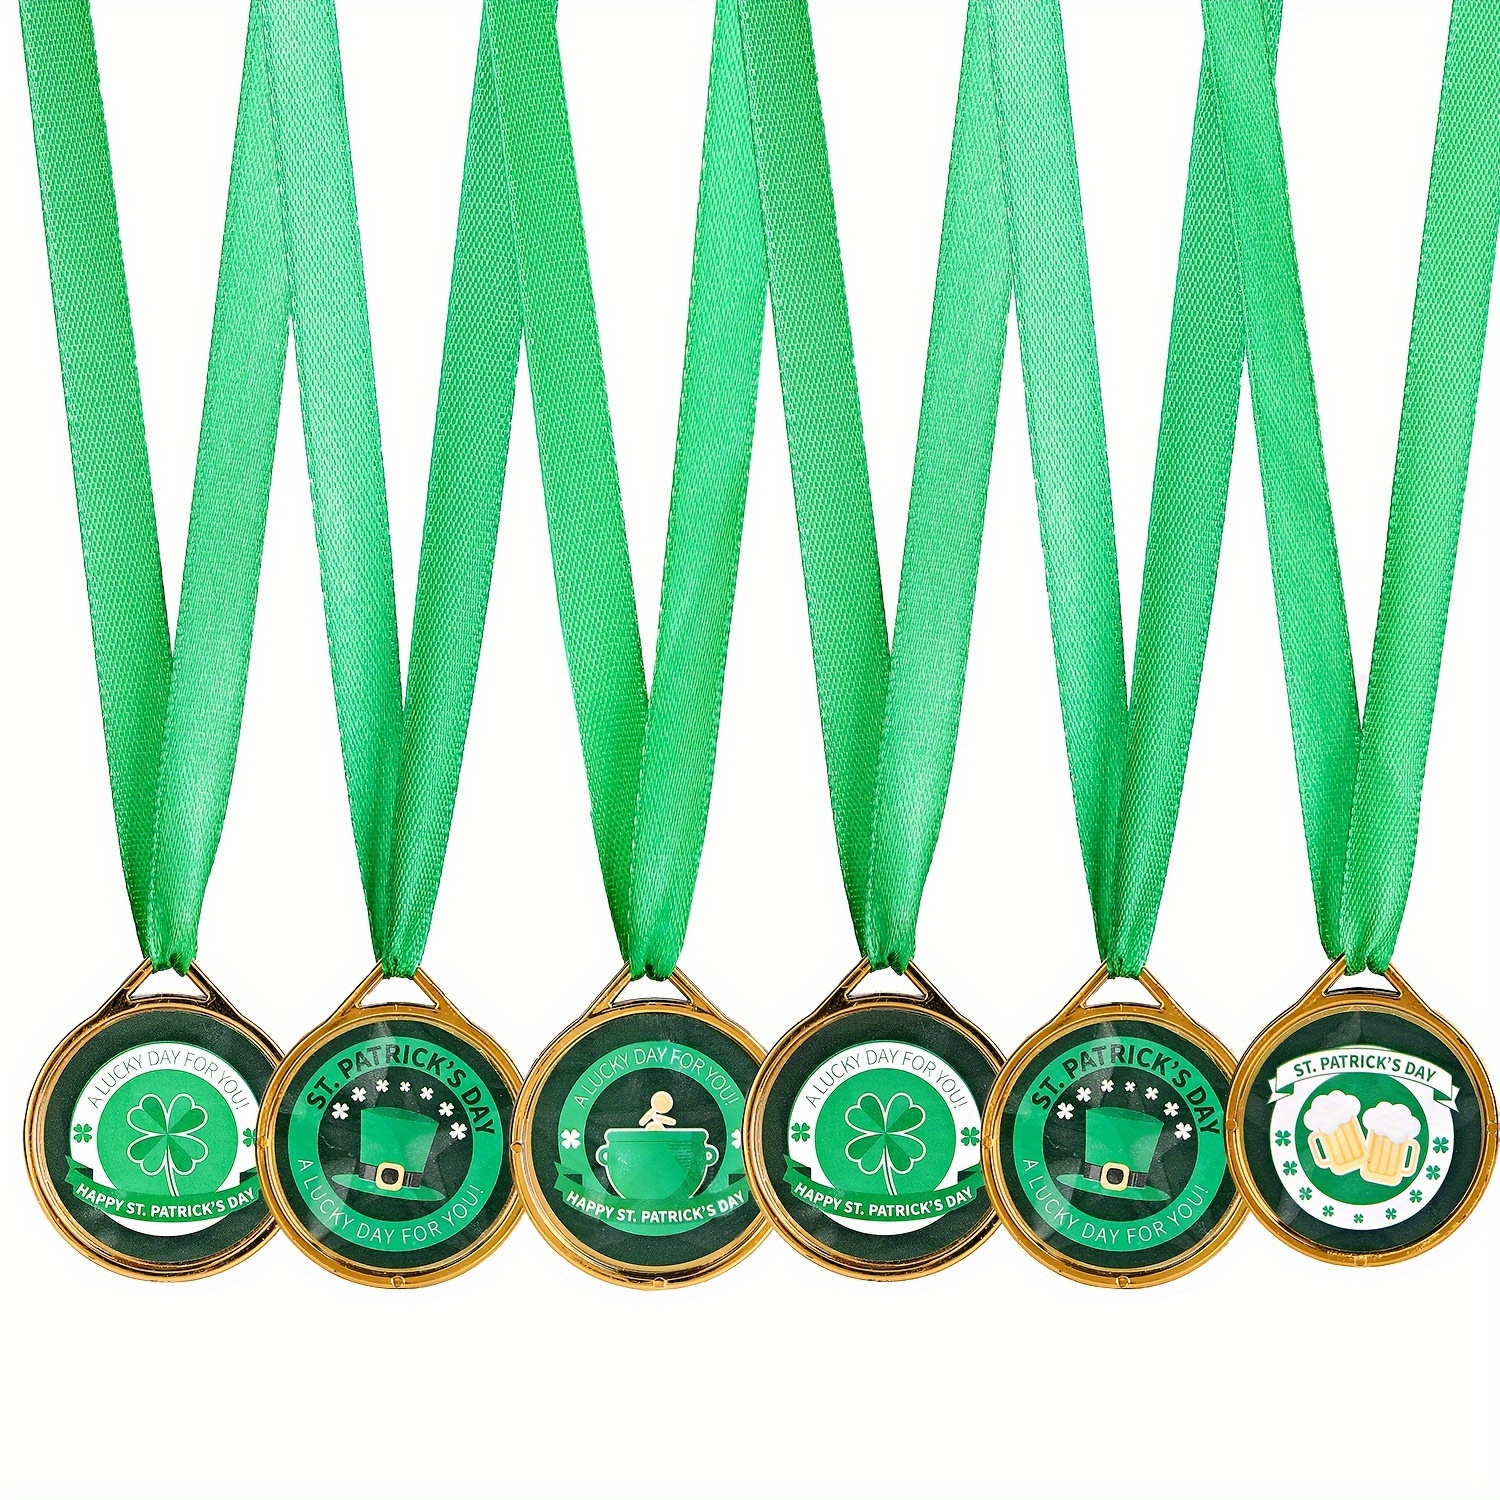 Medallas de Metal,3 Piezas Medallas de Oro Deportiva medallas niños  Premio,con Cinta,Premio Medallas Oro, Plata, Bronce, para Fiesta